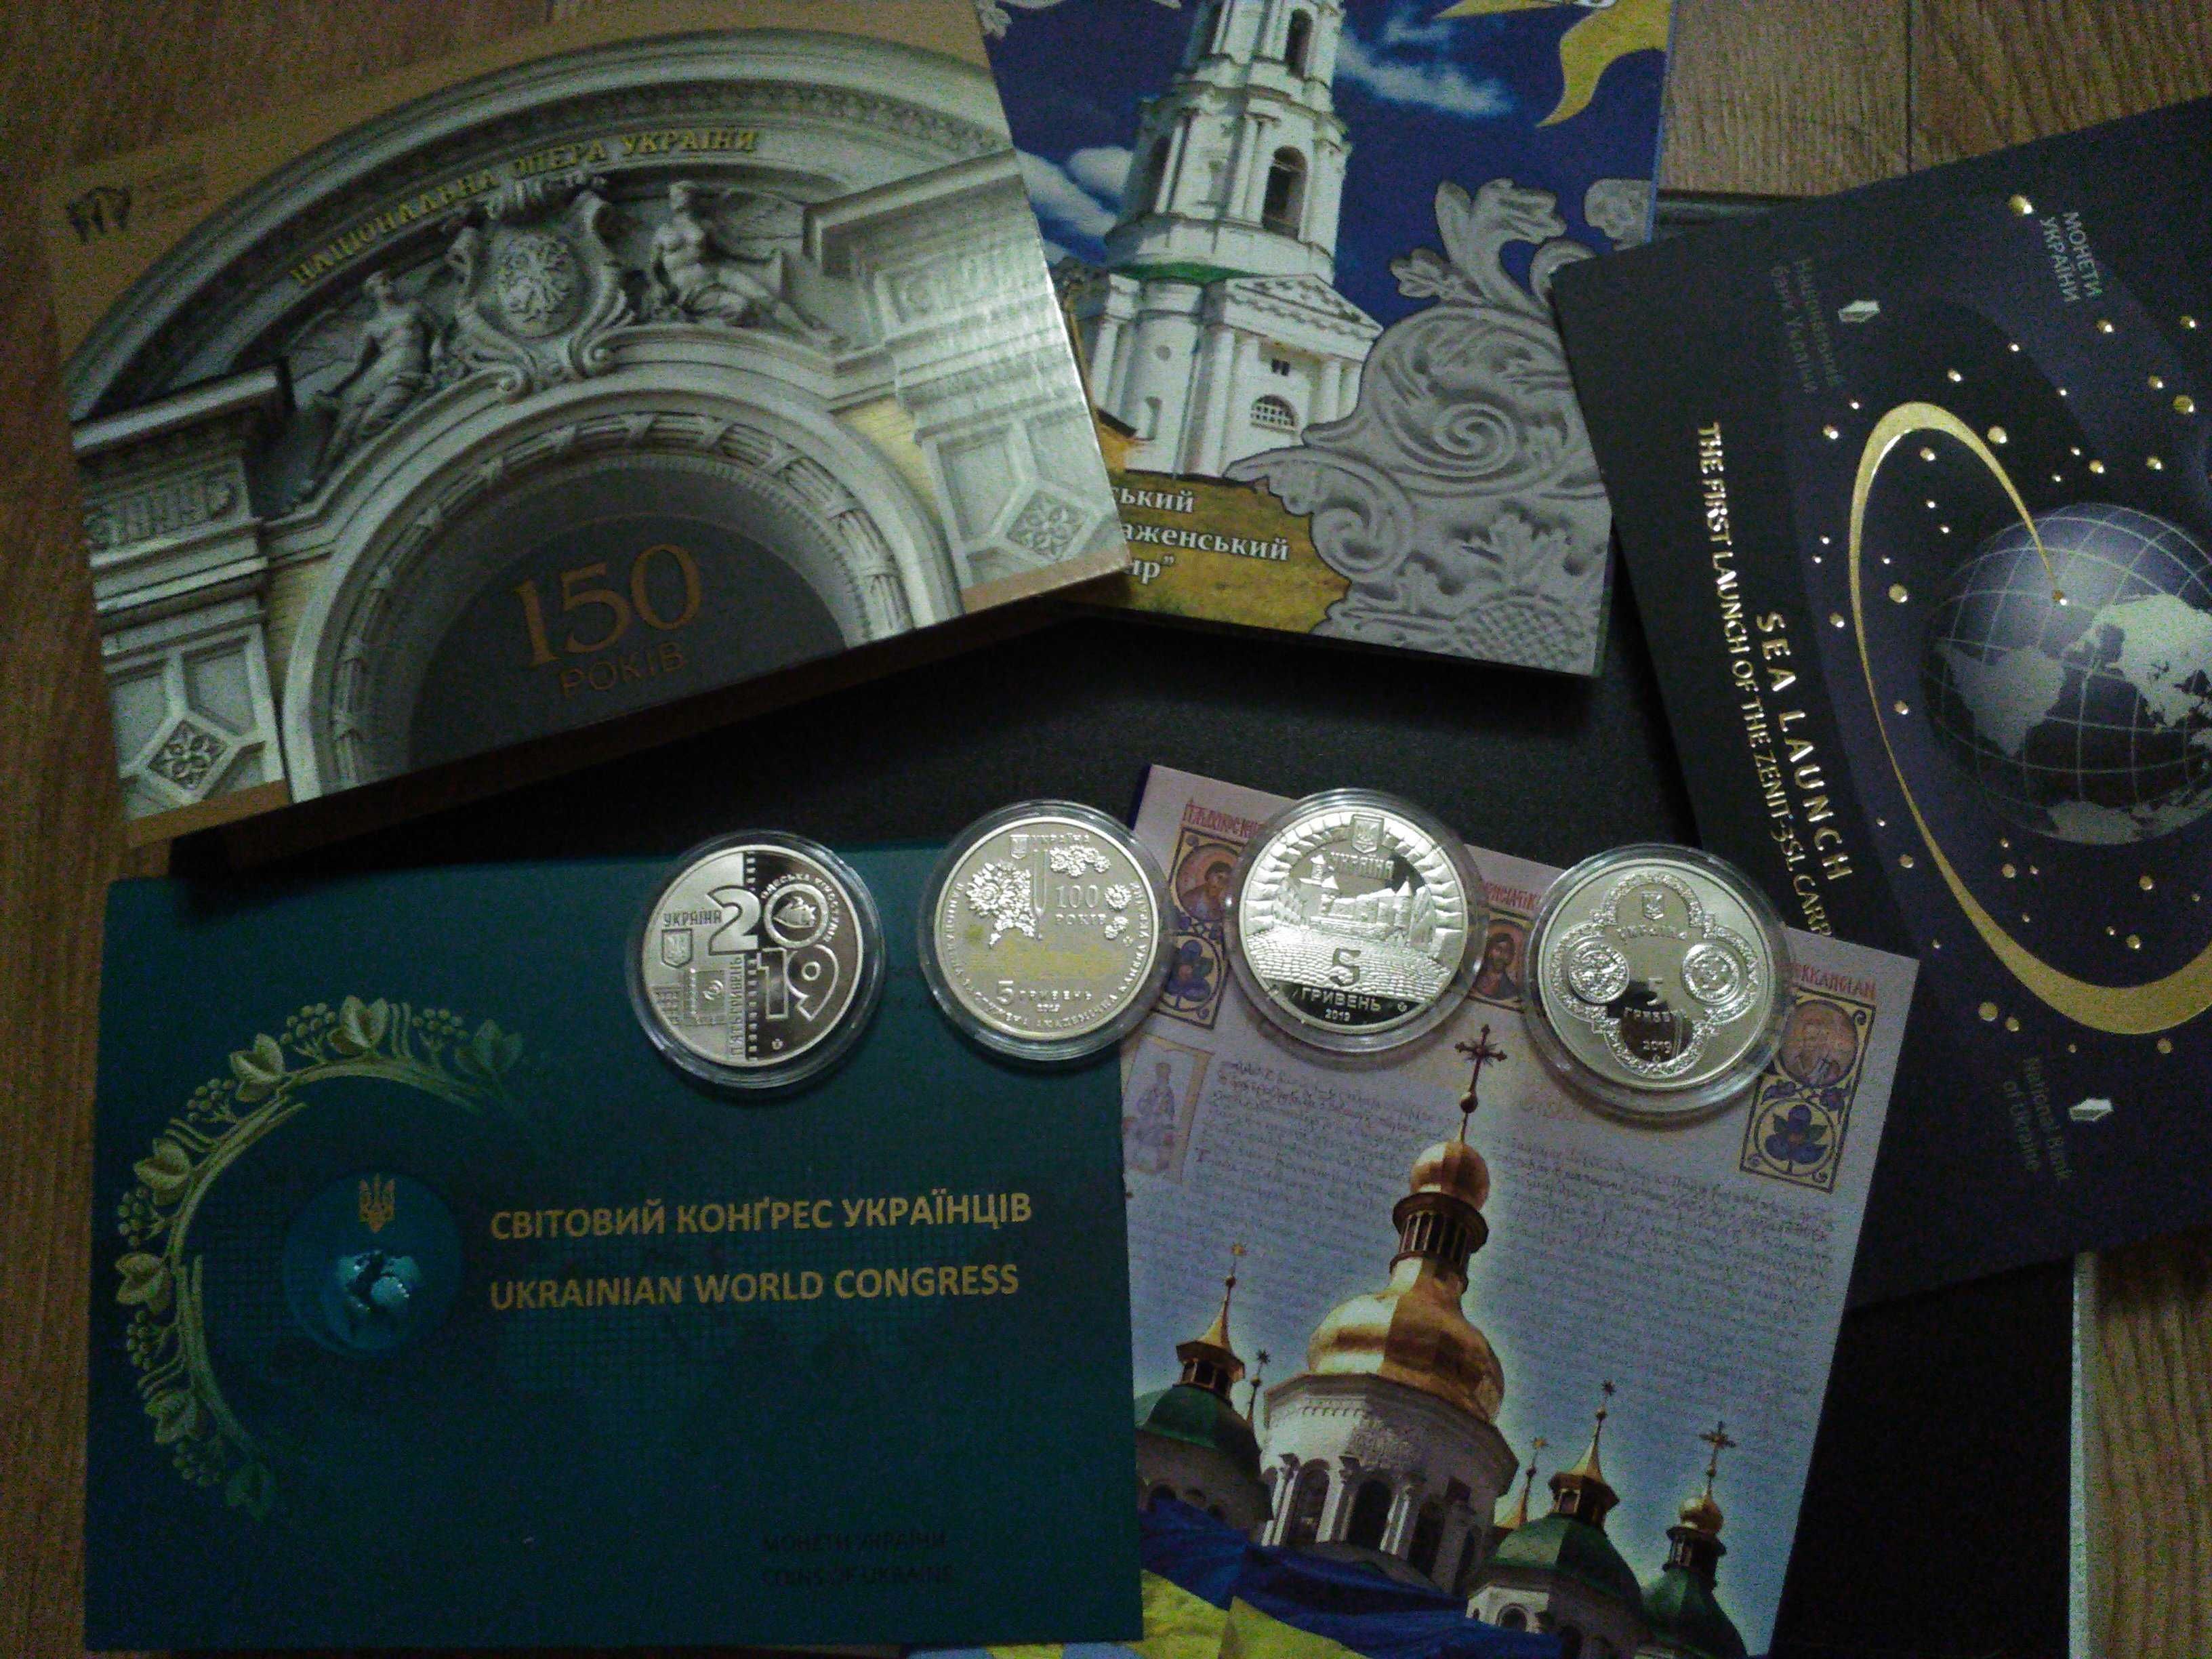 Колекційні монети і медалі НБУ 1995-2022 років. Нейзильбер.